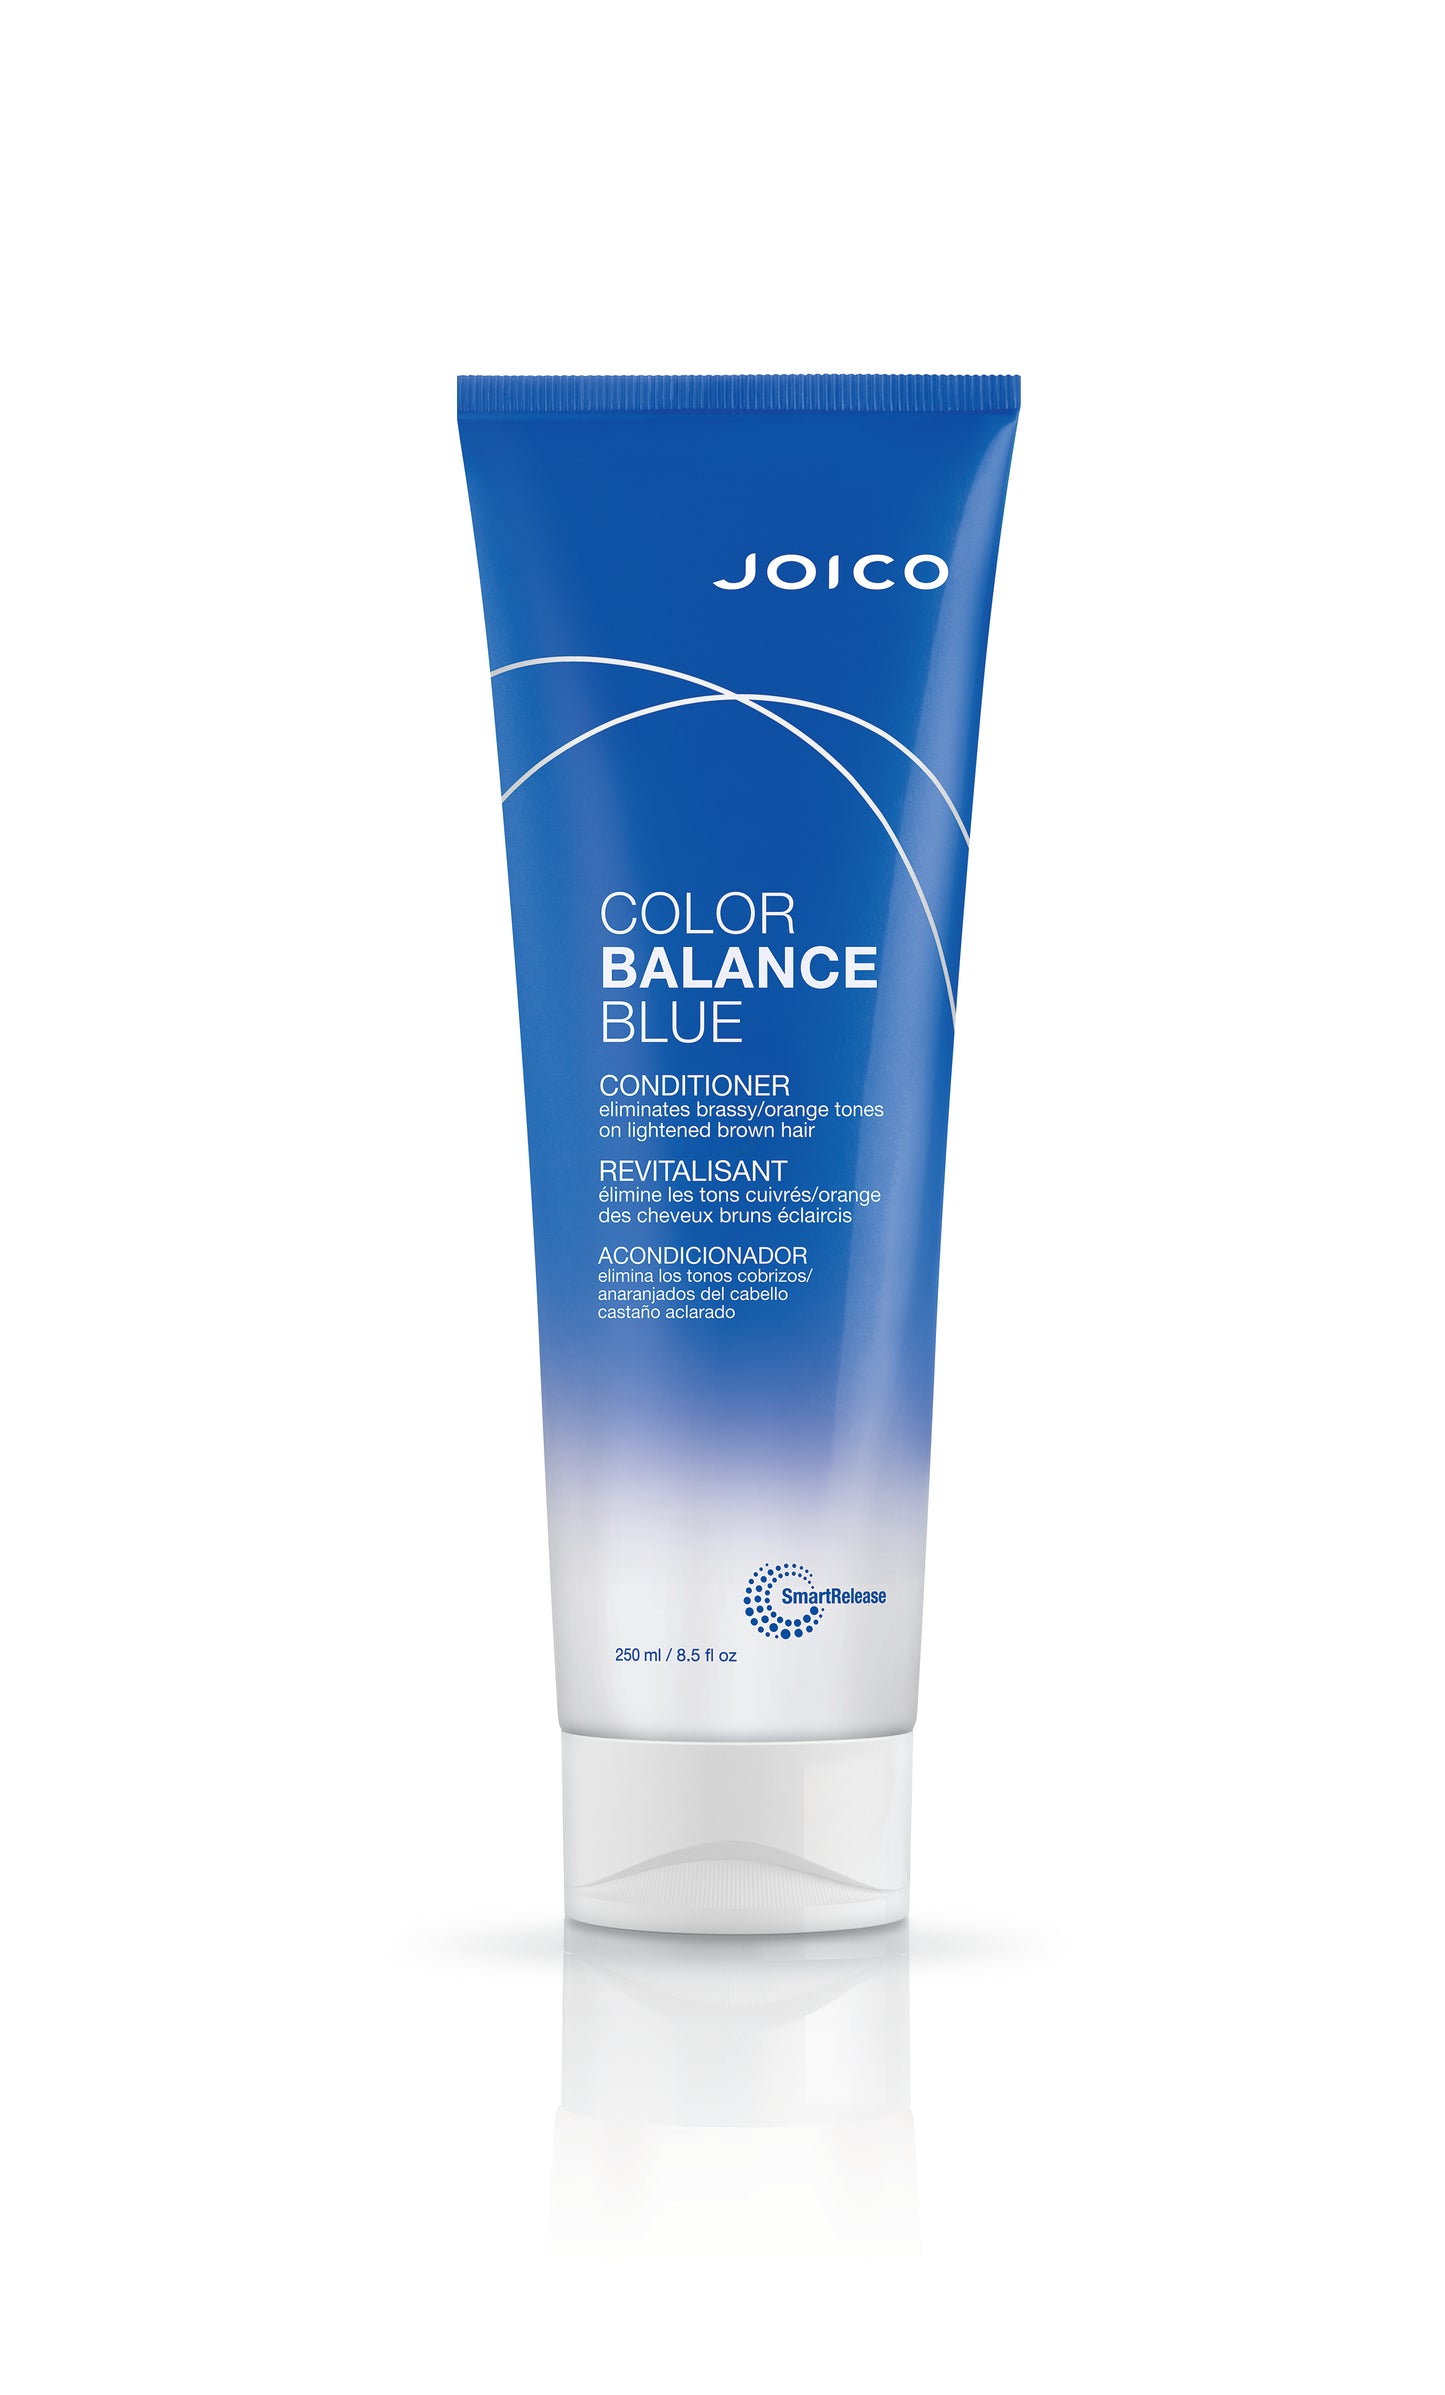 Cond Joico Color Balance Bleu 250ml